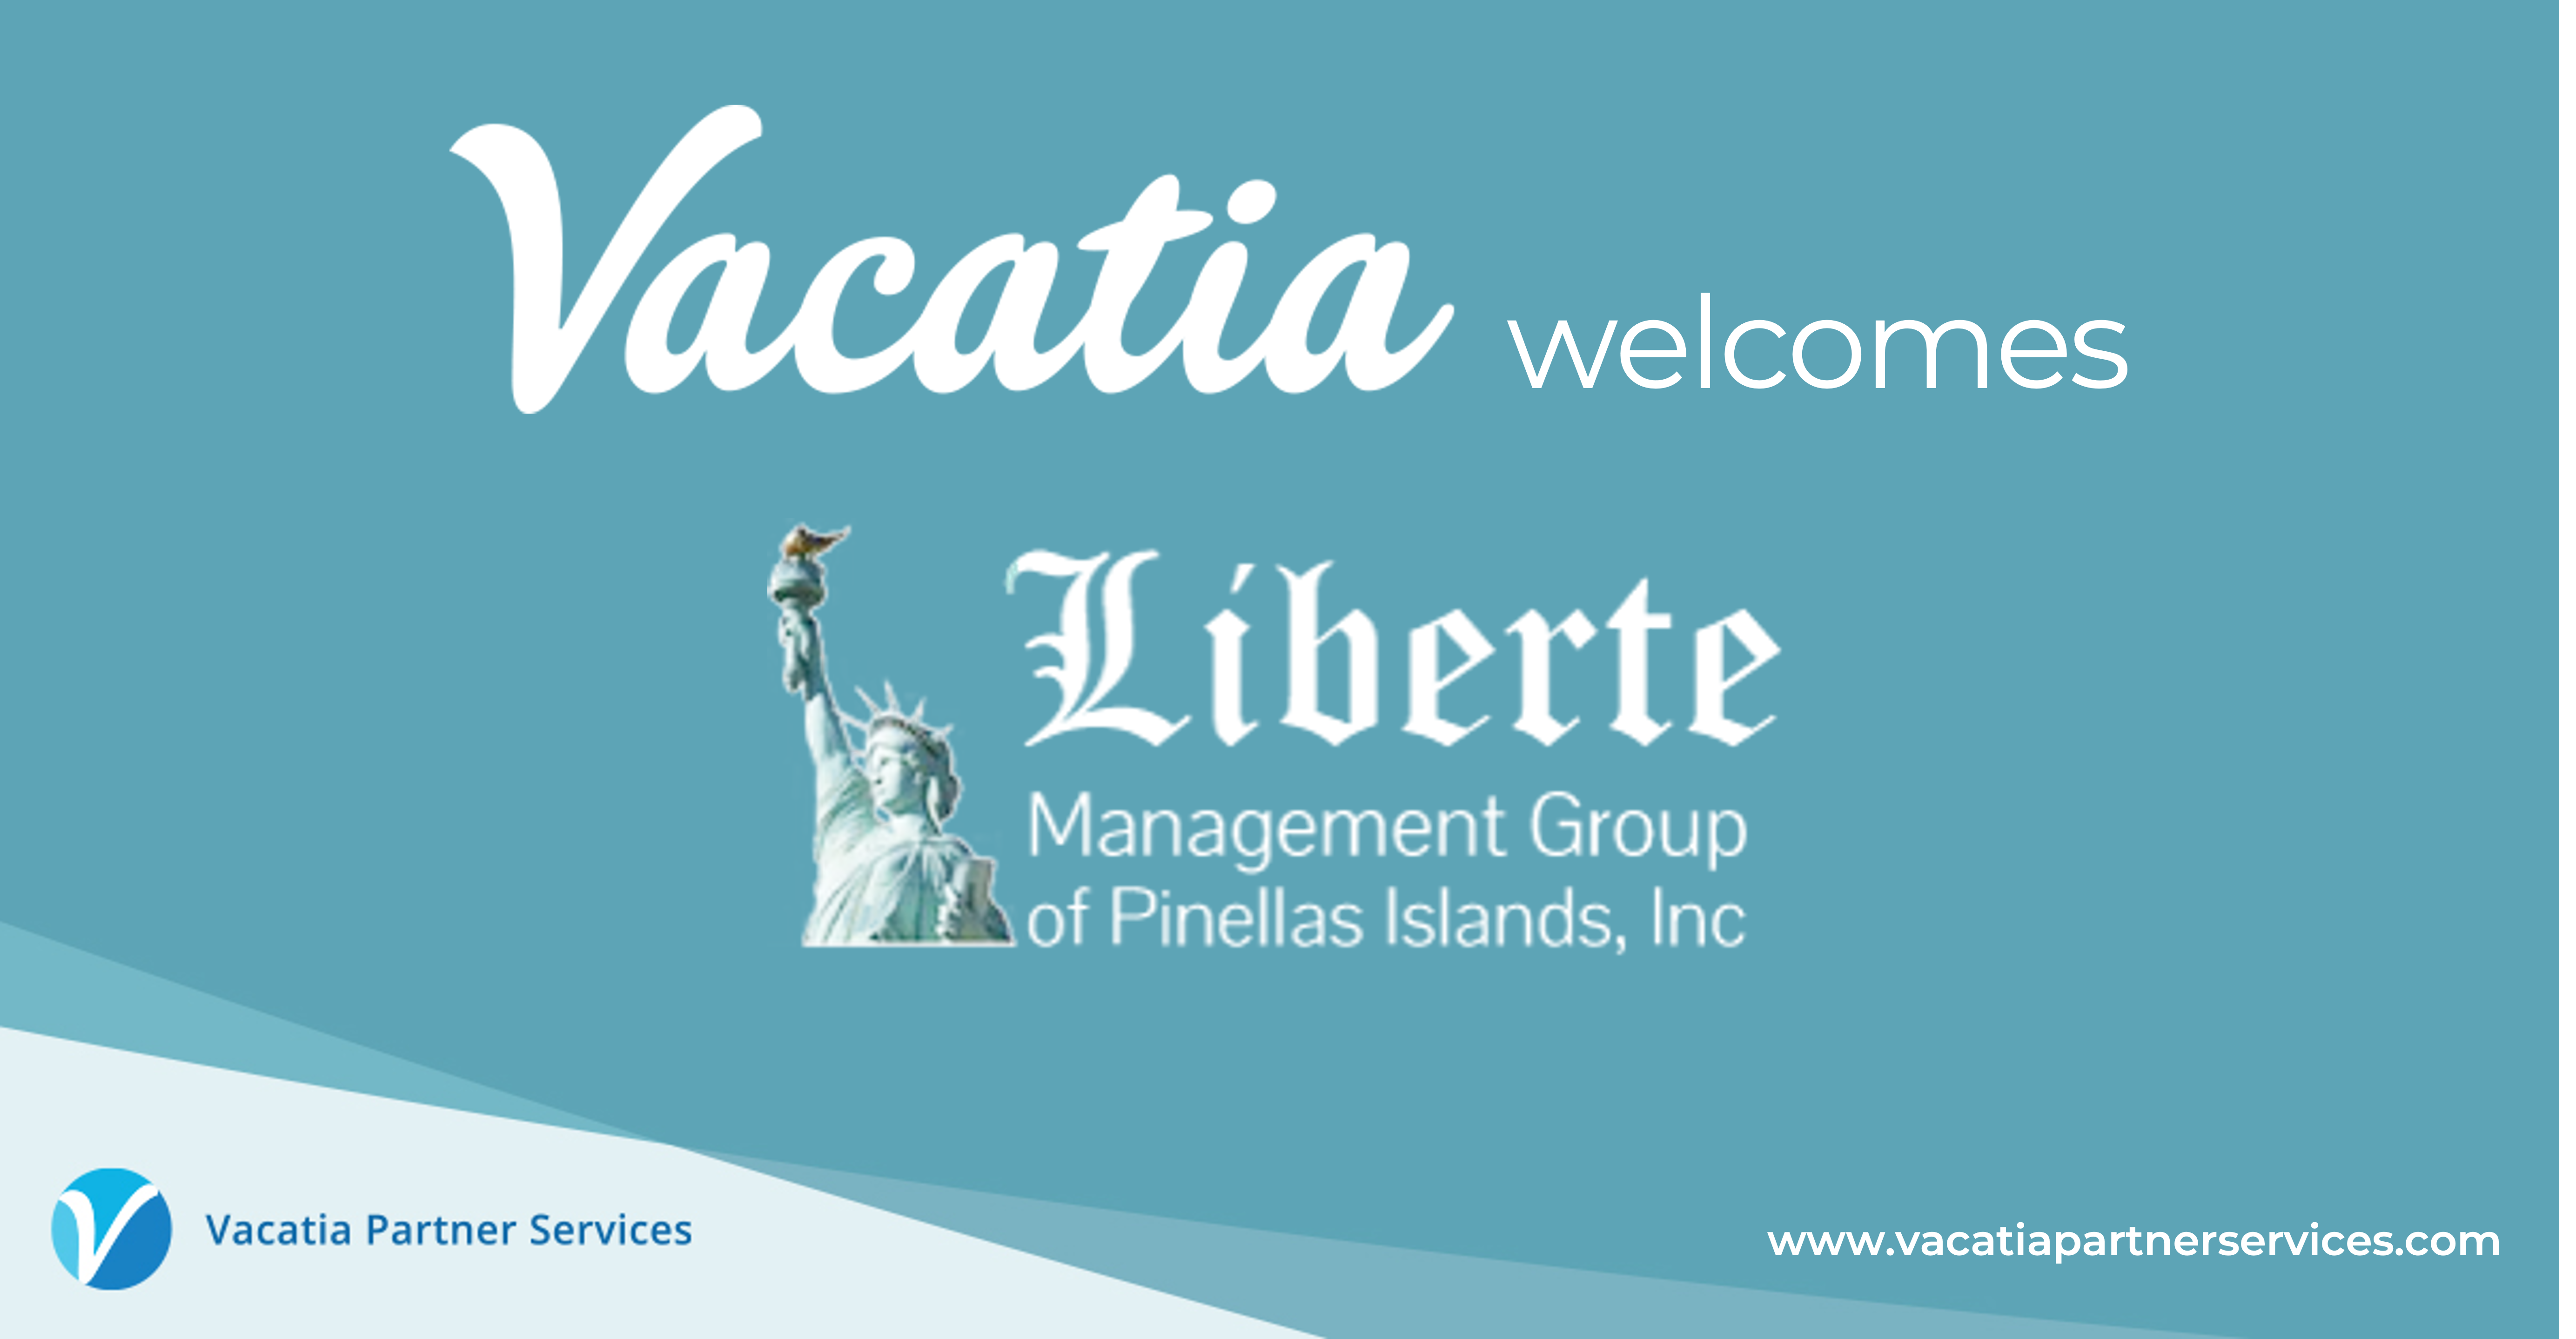 Vacatia announces the acquisition of Liberte Management Group